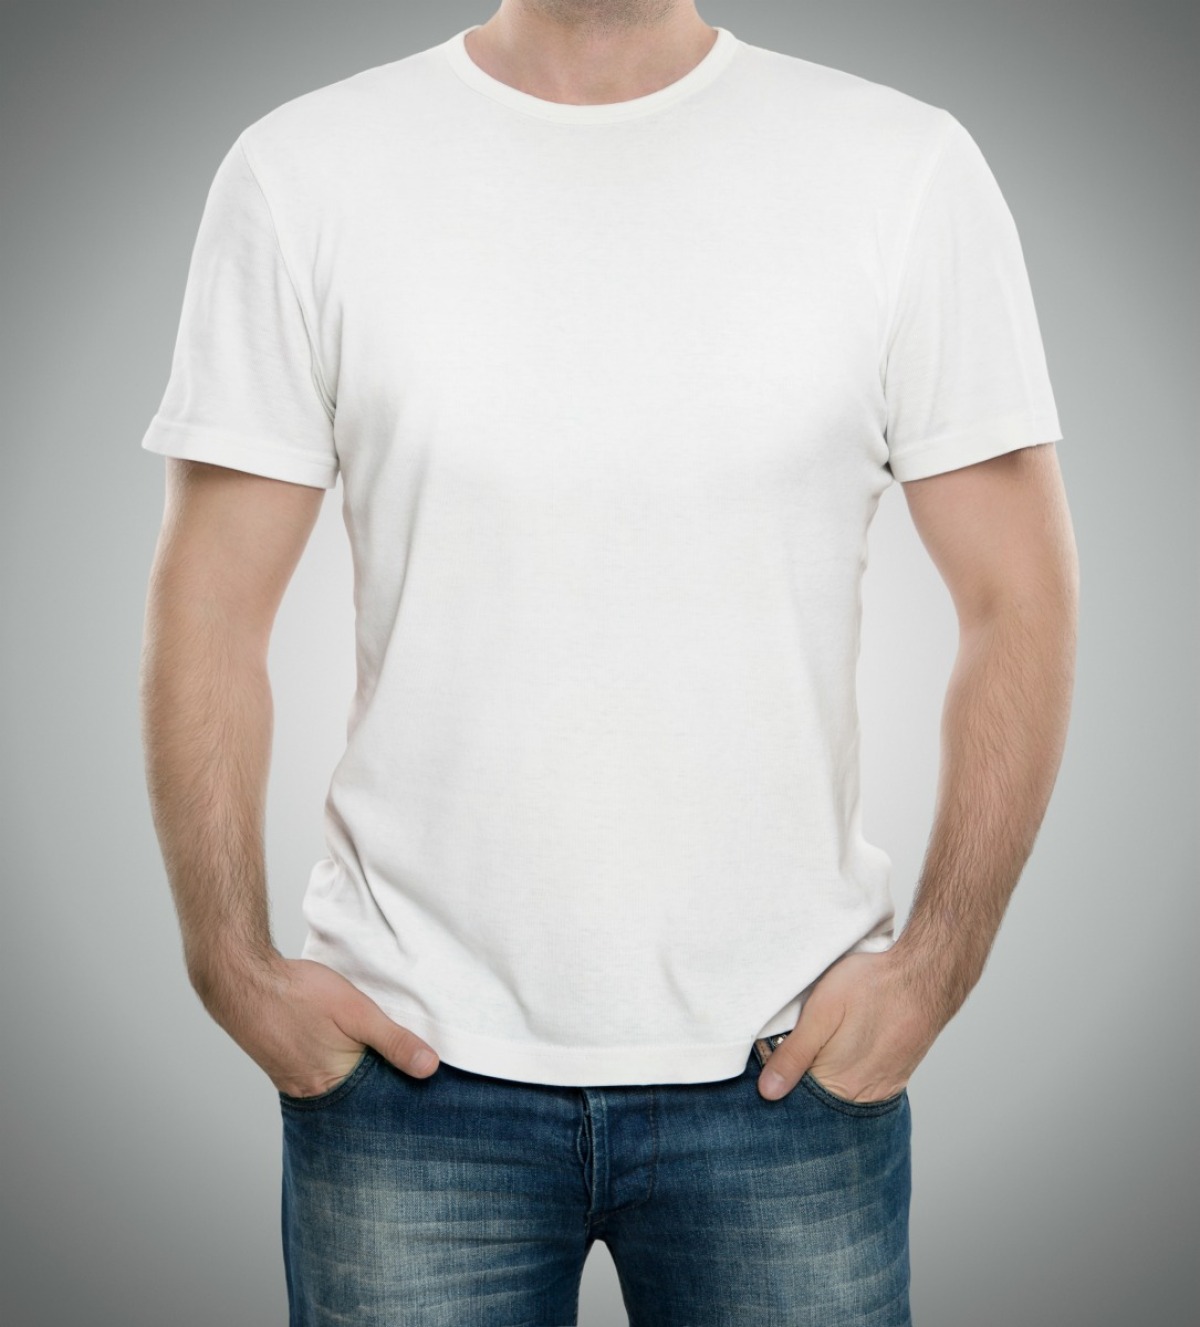 a Cotton T-Shirt? | ThriftyFun